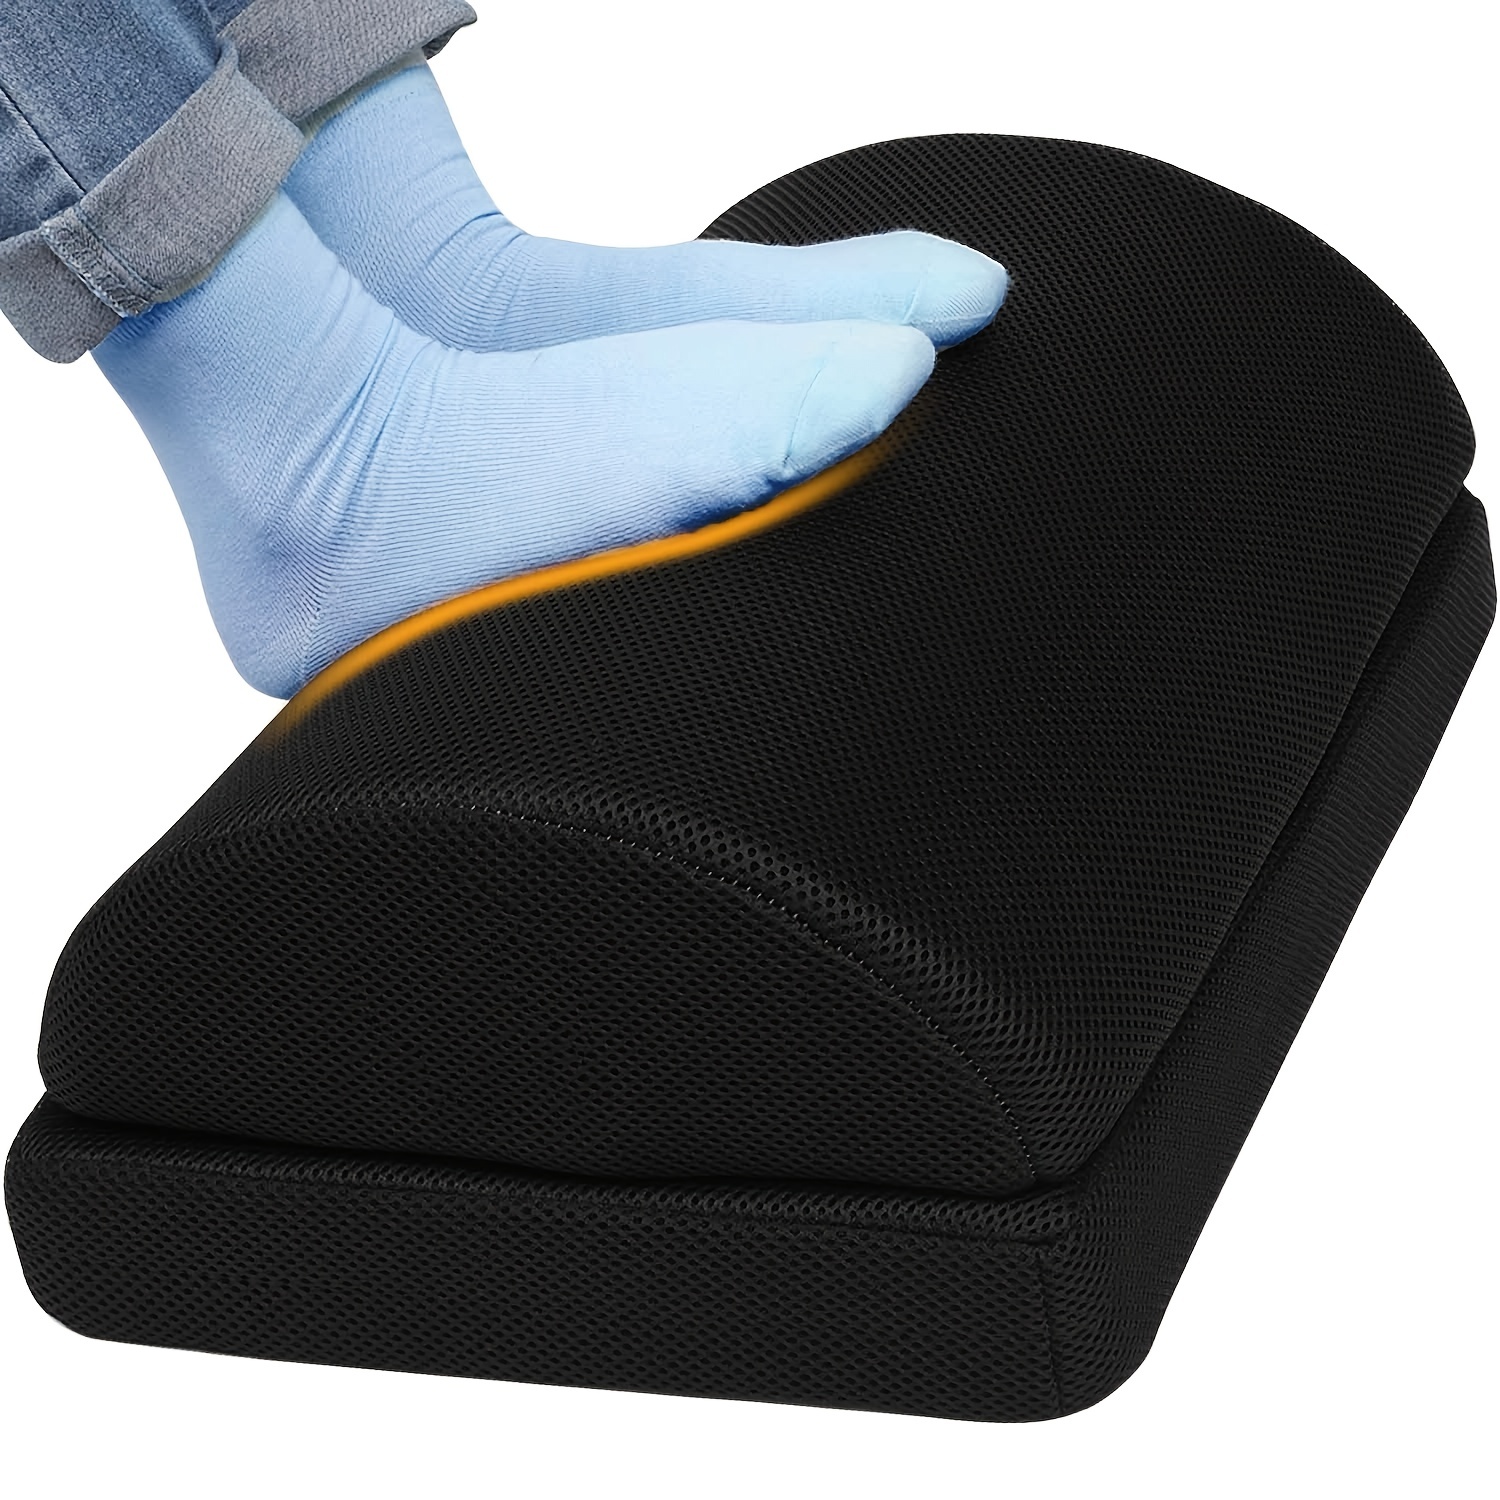 CushZone Foot Rest for Under Desk at Work Adjustable Foam for